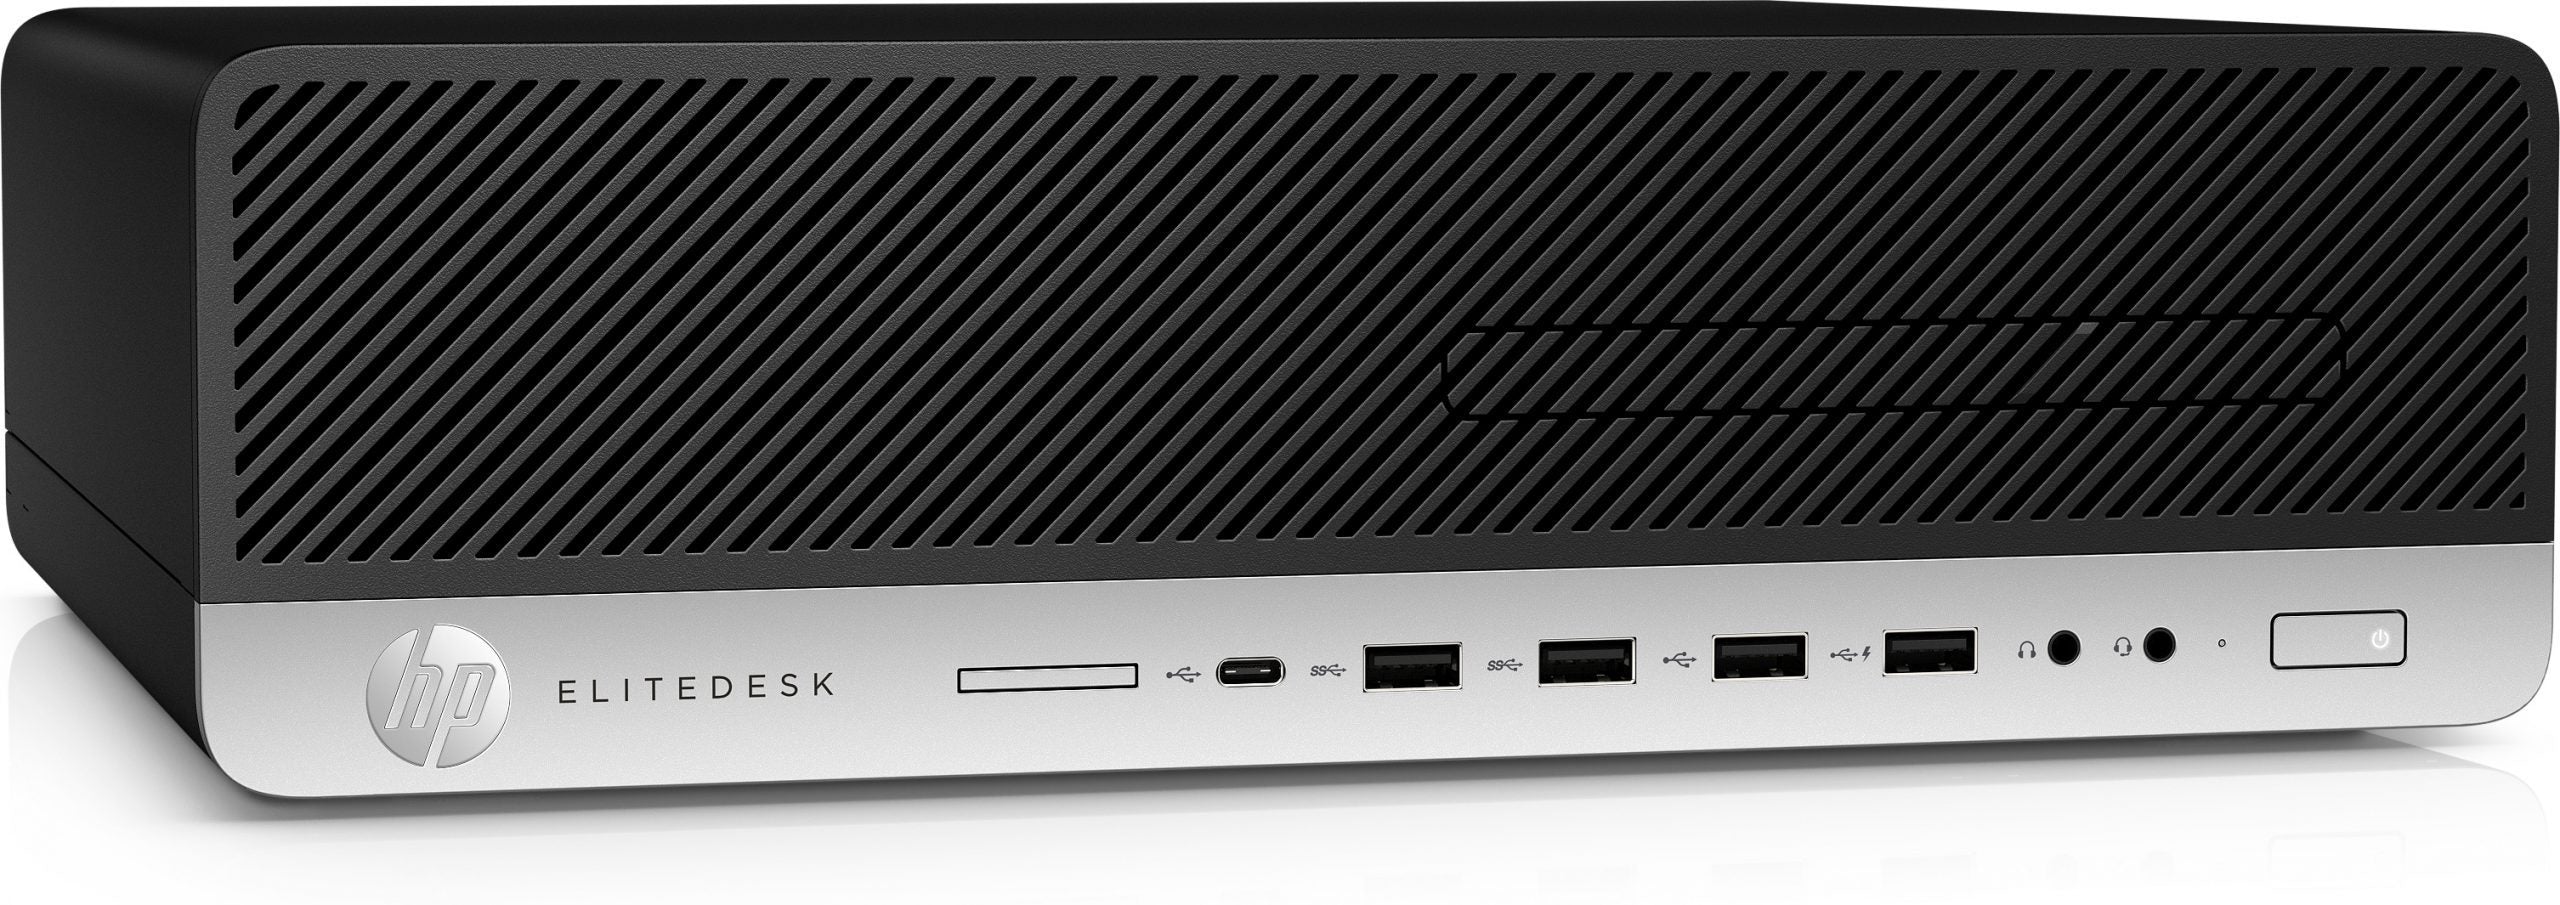 HP EliteDesk 800 G3 SFF | i5-7500 3.4Gh | 8/16Gb Ram | SSD 480Gb + 1Tb SATA | USB-C Windows 10 Pro